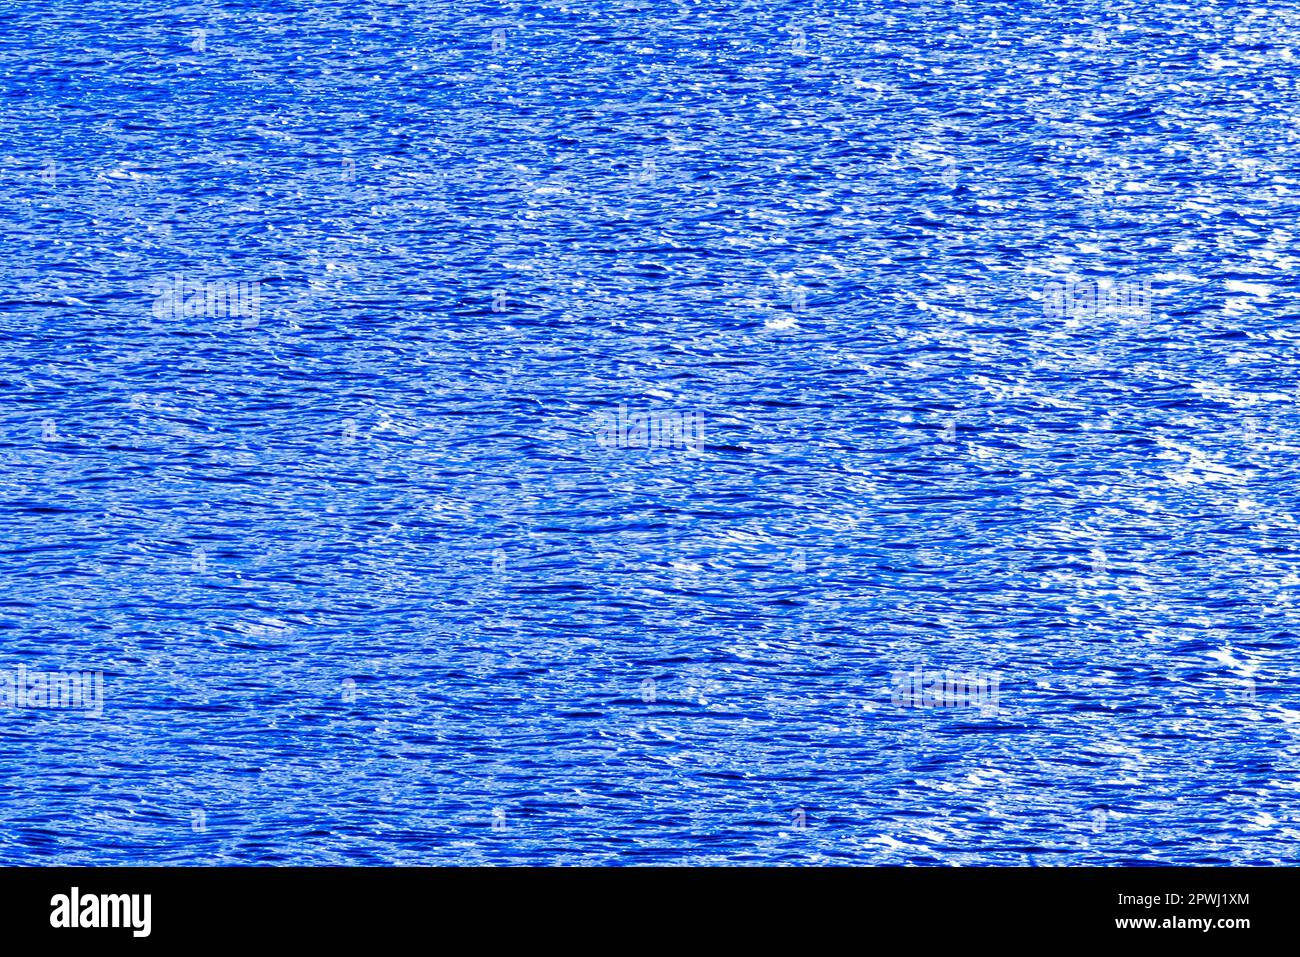 Hintergrund Wasserspiegel Nahe Zeewolde verschiedenfarbige Spiegelung des Veluwemeerarmes Foto Stock